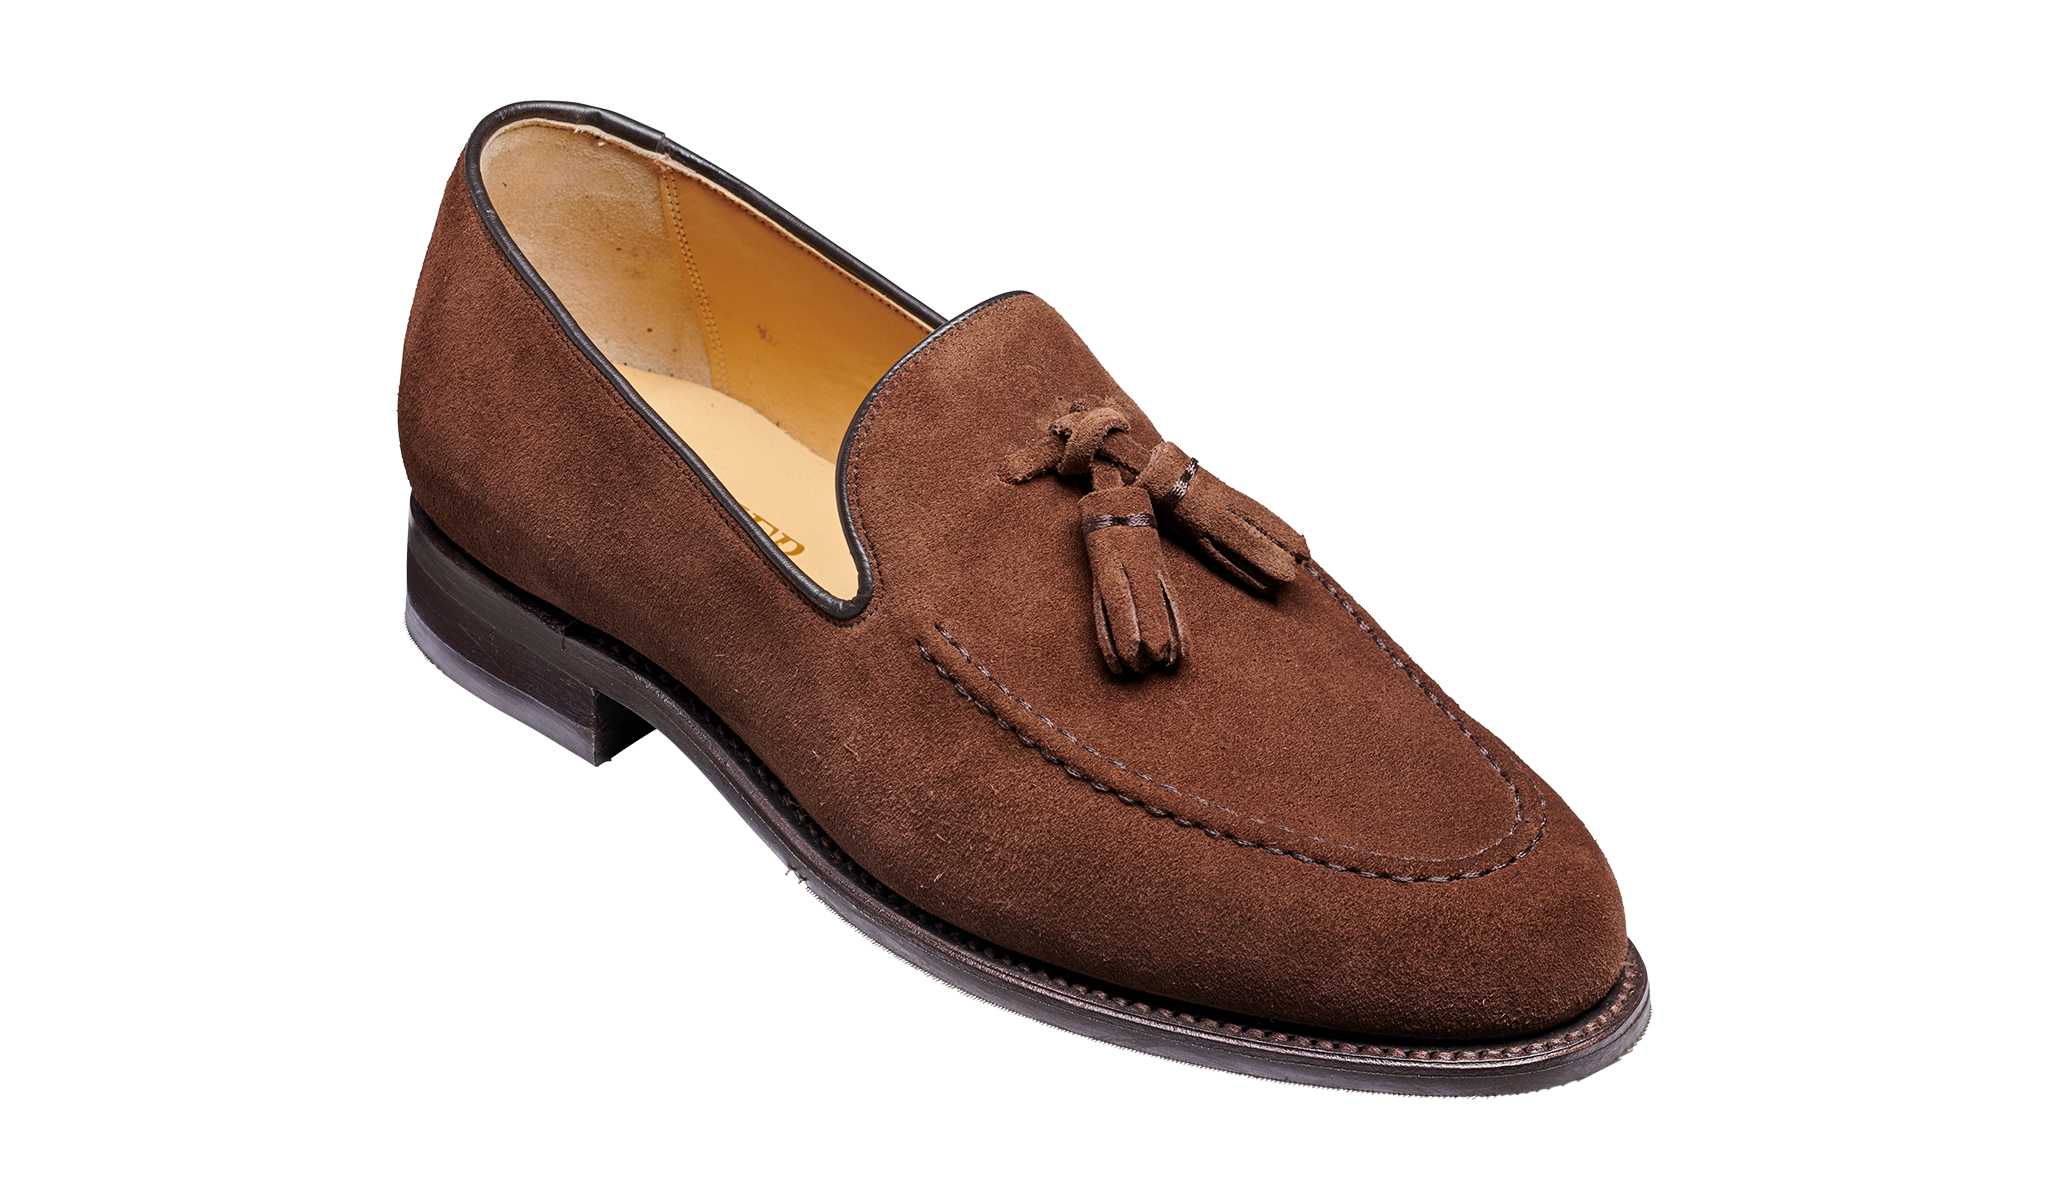 Studland - A men's loafer by Barker Shoes.